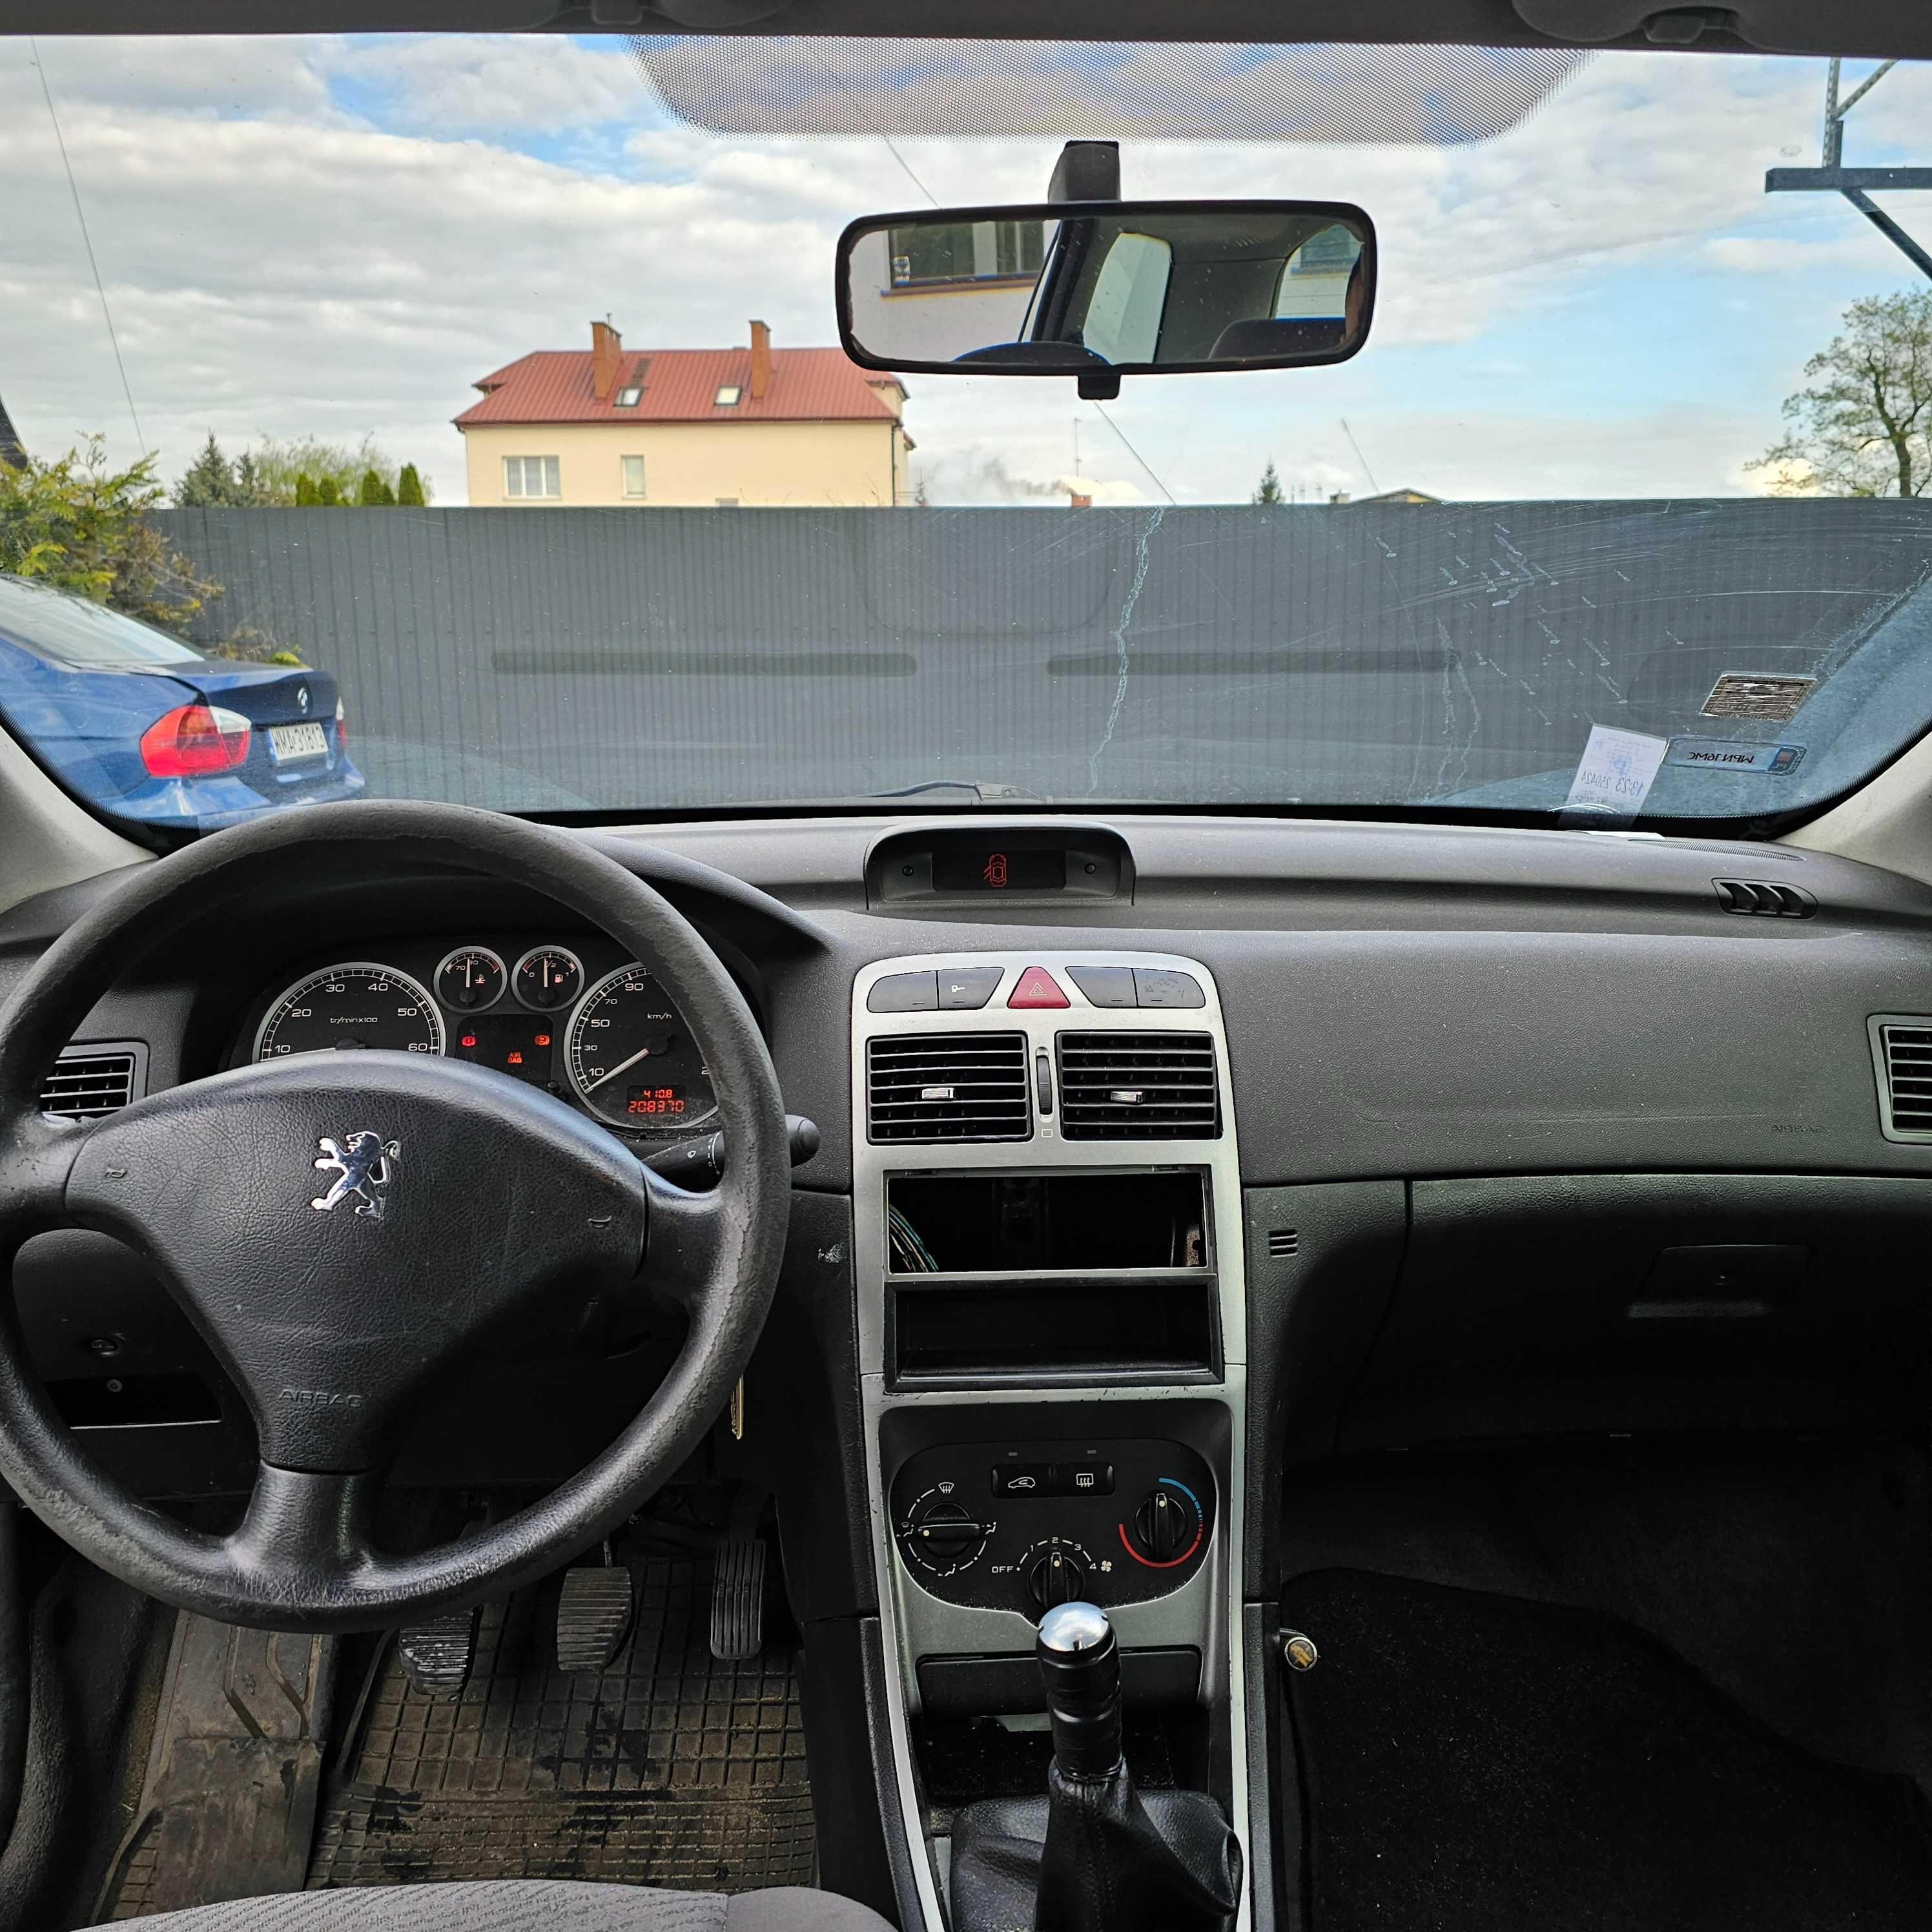 Peugeot 307 SW GAZ  Zarejestrowany  Oplacony